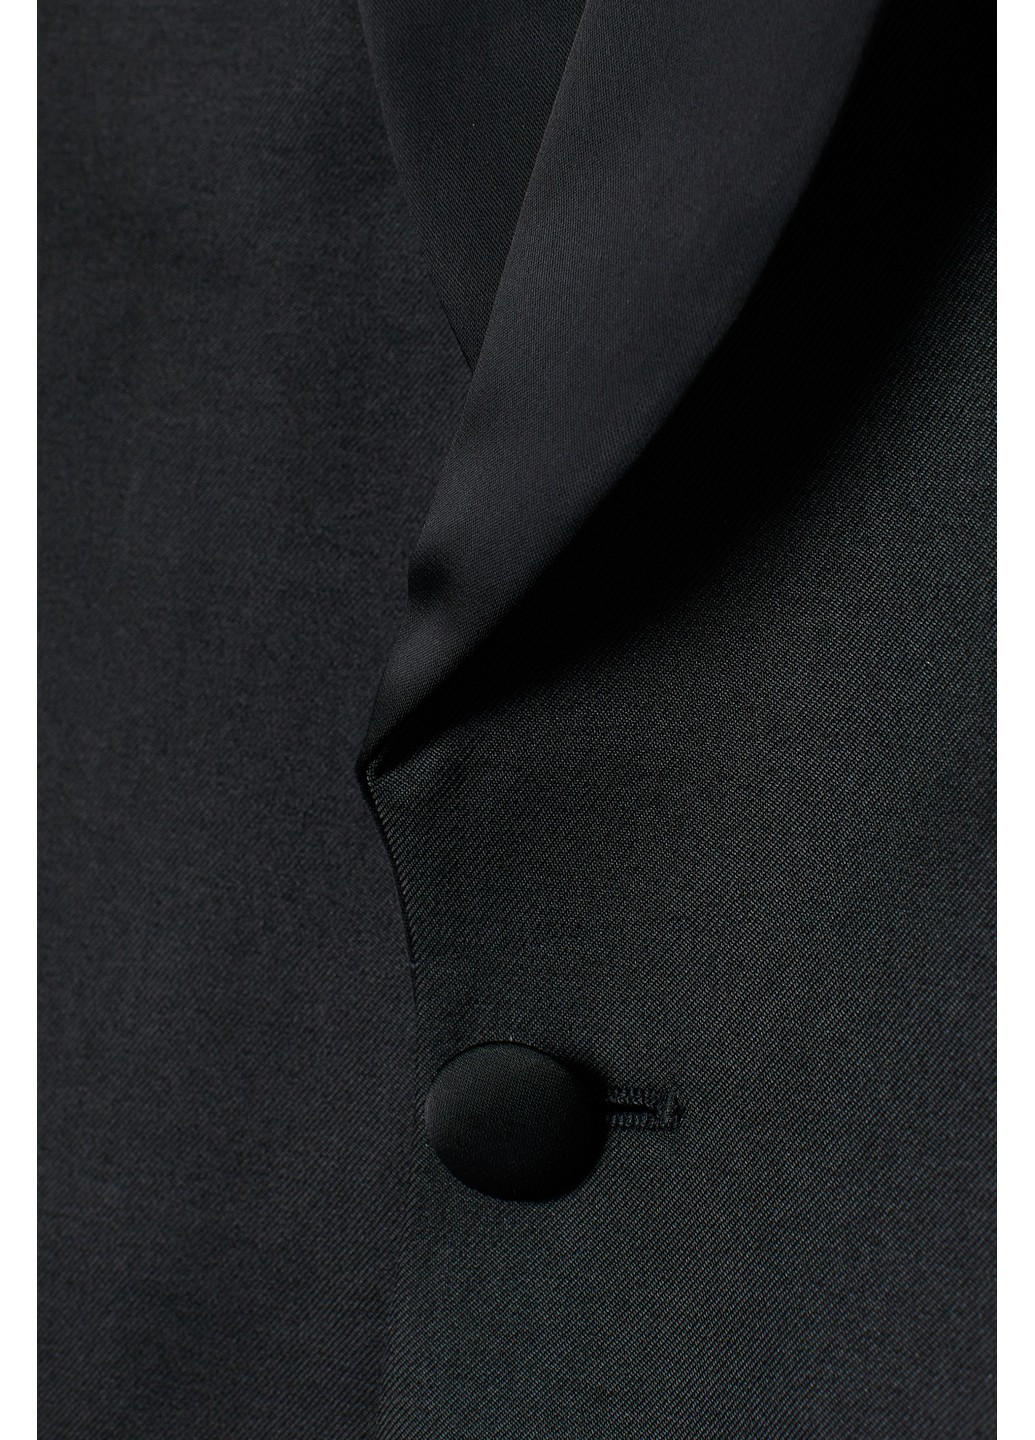 Пиджак H&M однотонный чёрный деловой полиэстат